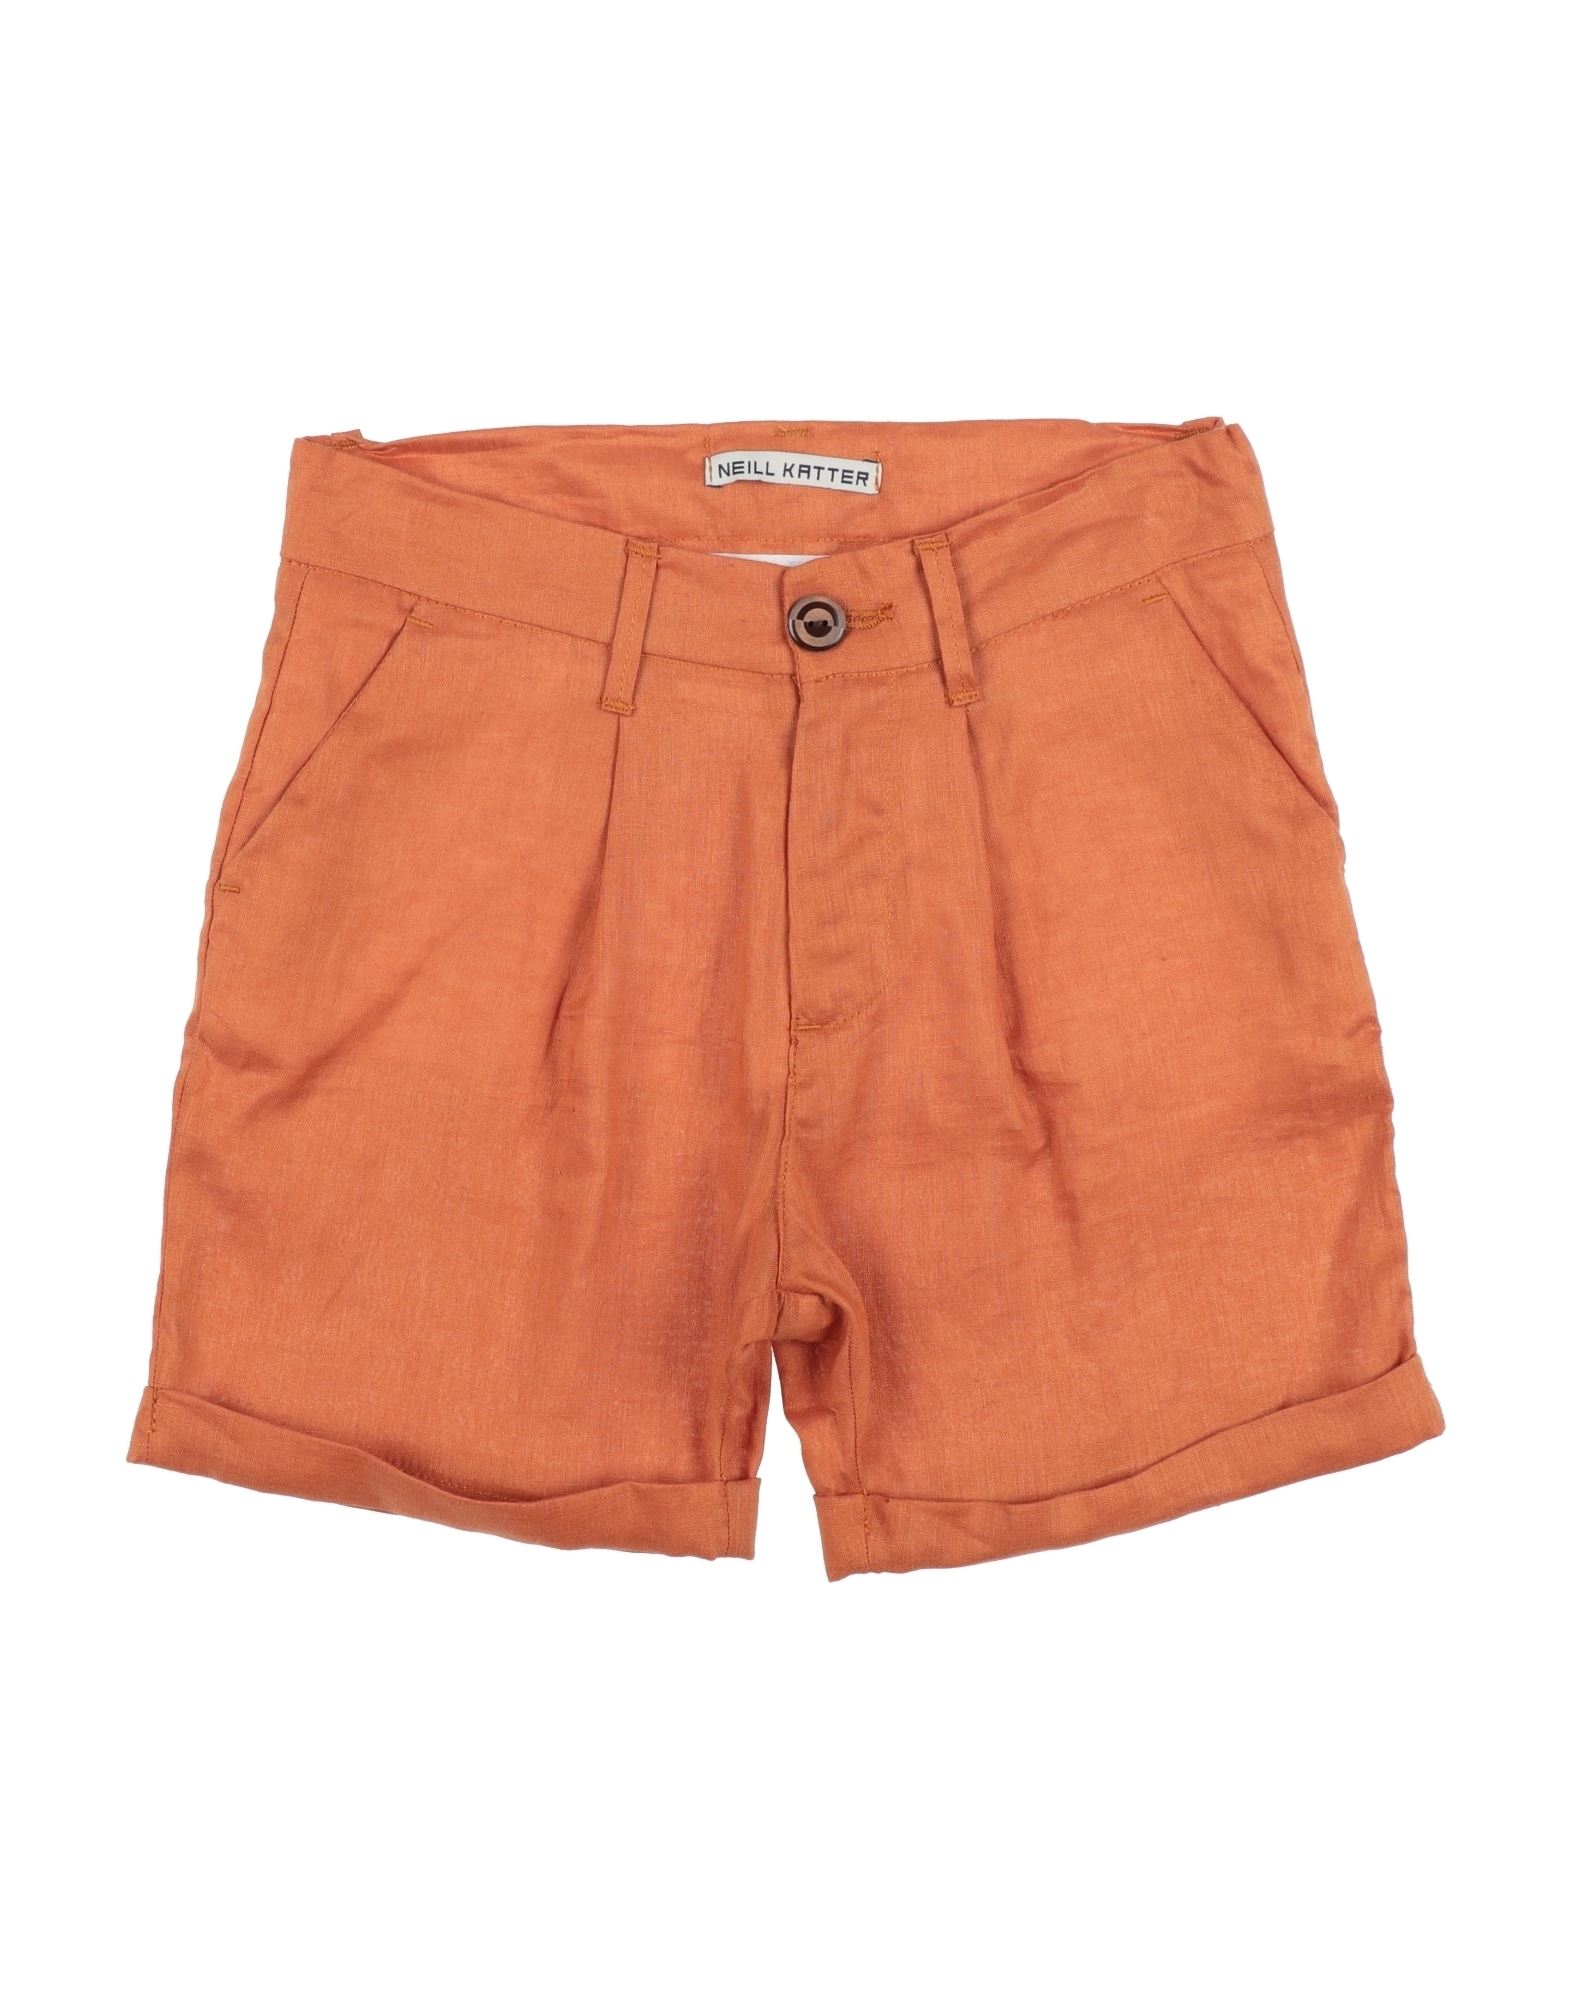 NEILL KATTER Shorts & Bermudashorts Kinder Orange von NEILL KATTER